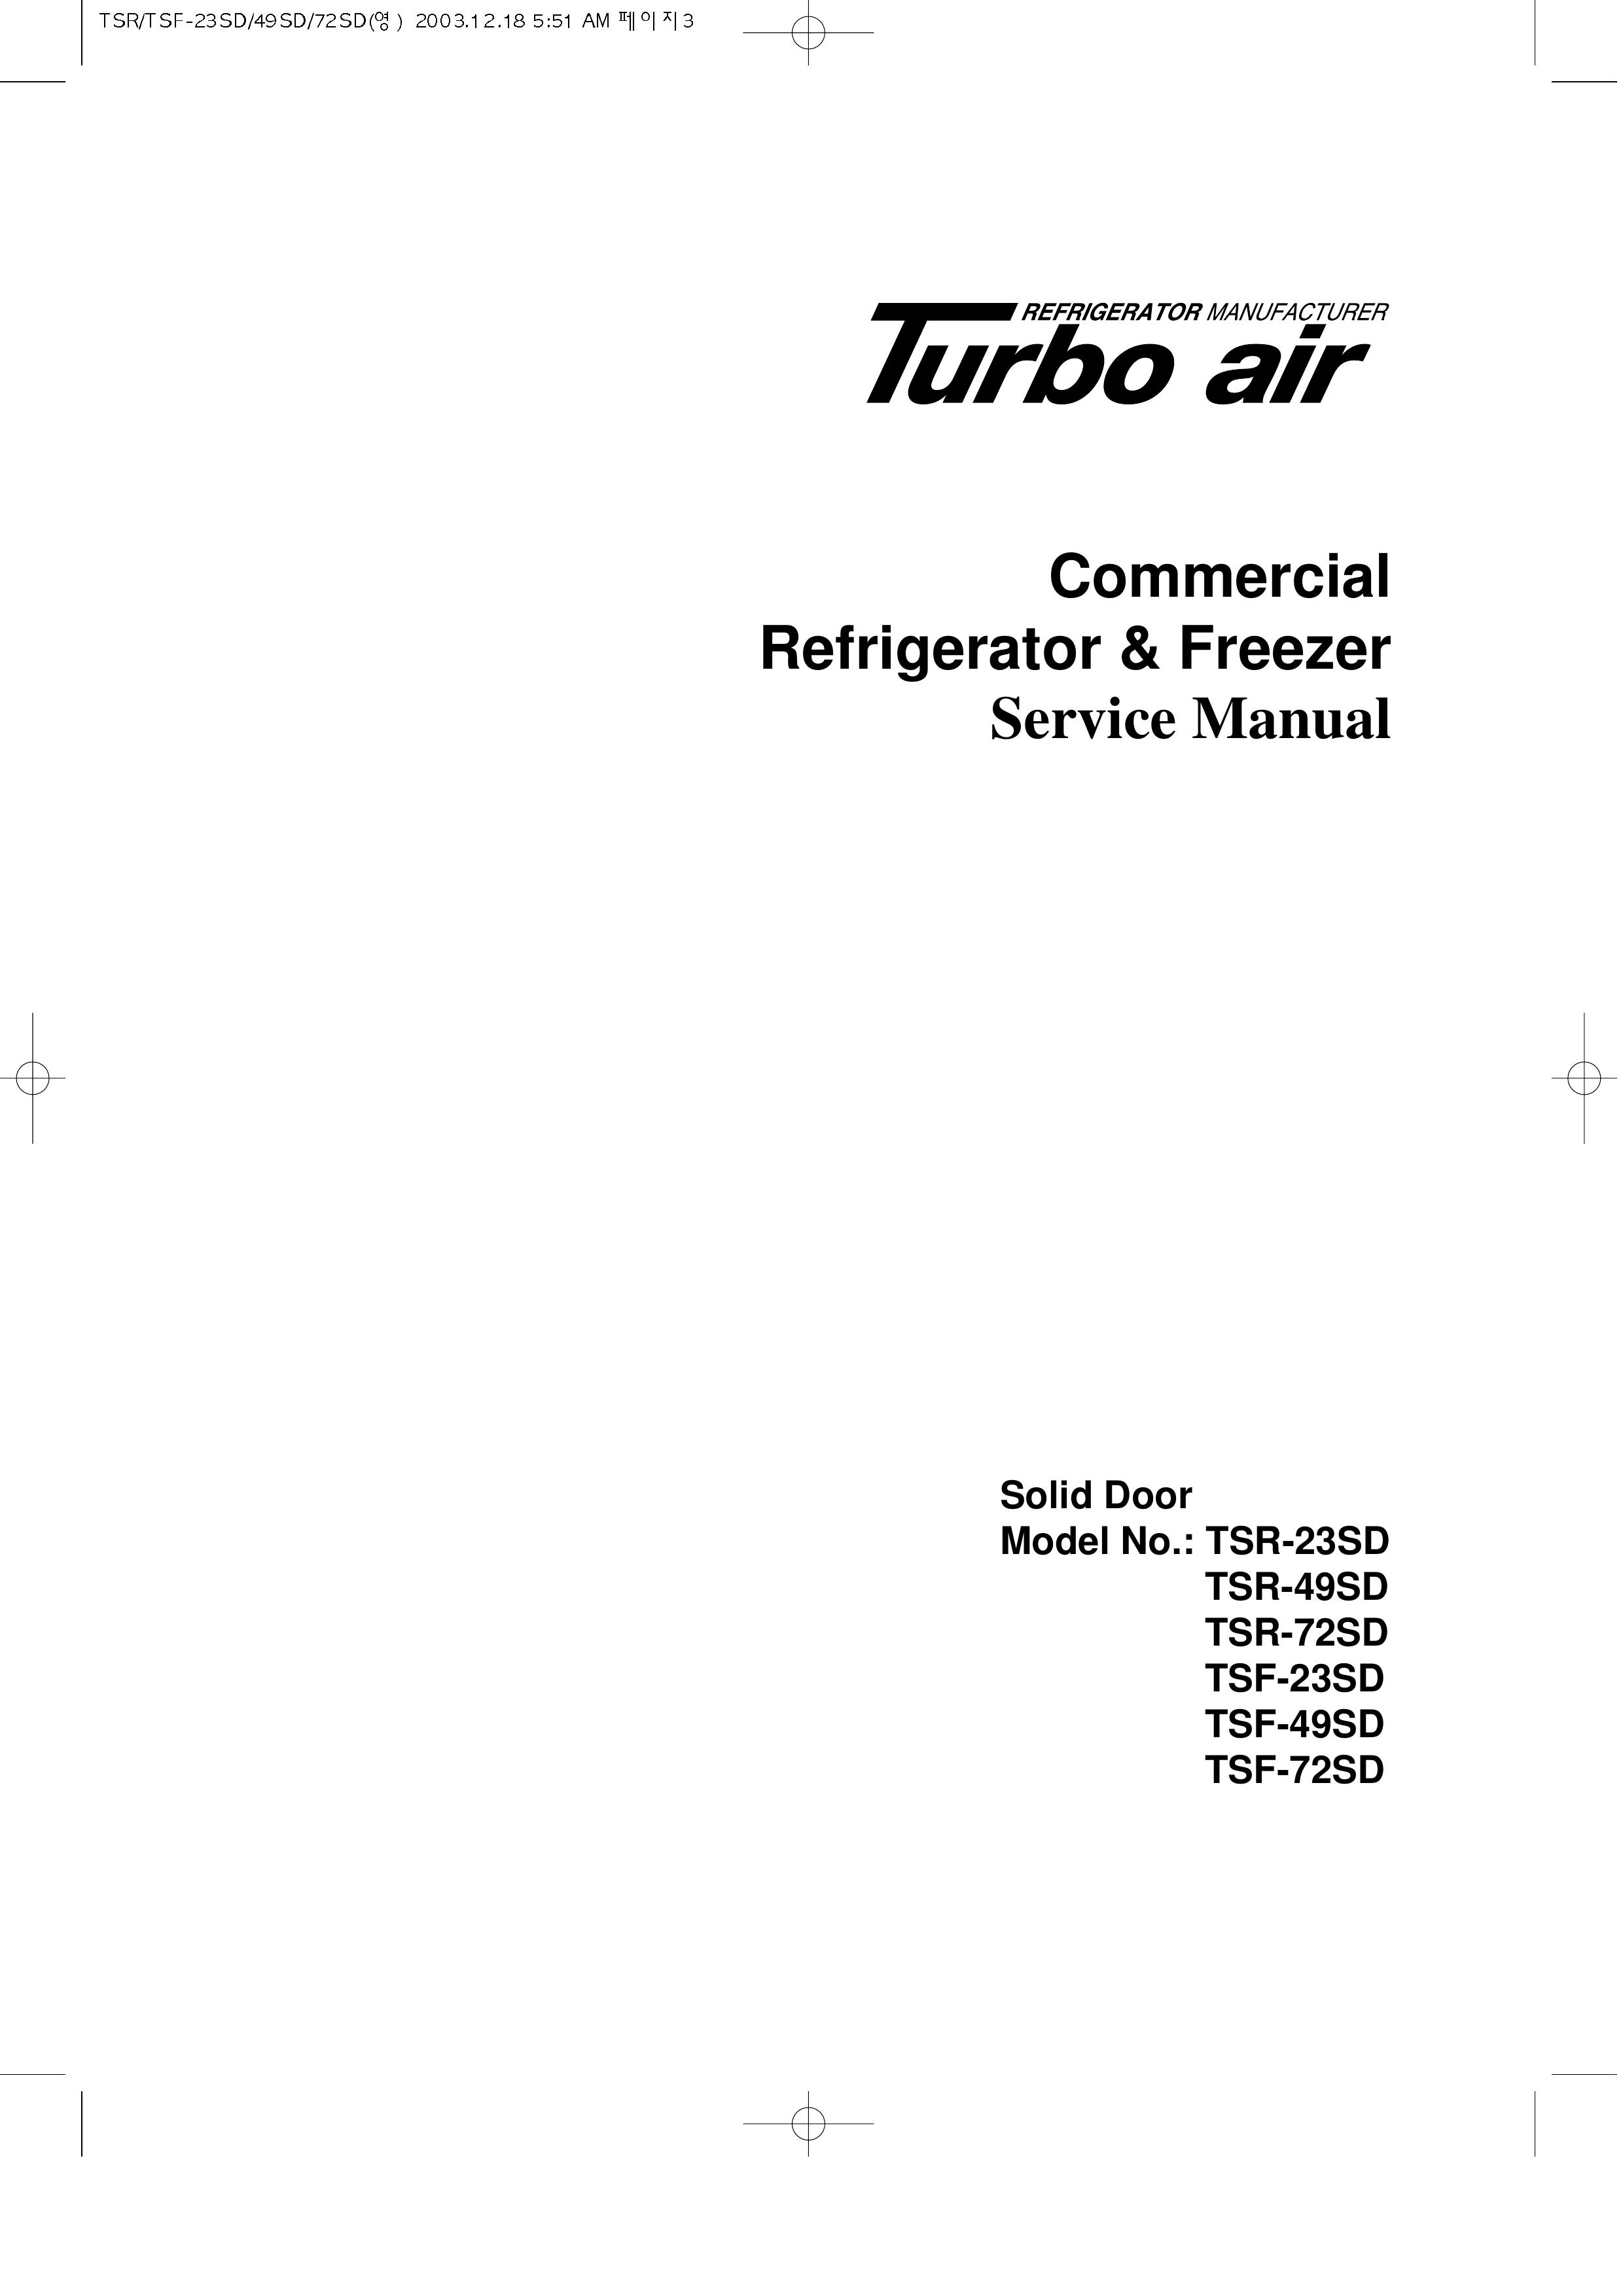 Turbo Air TSR-72SD Refrigerator User Manual